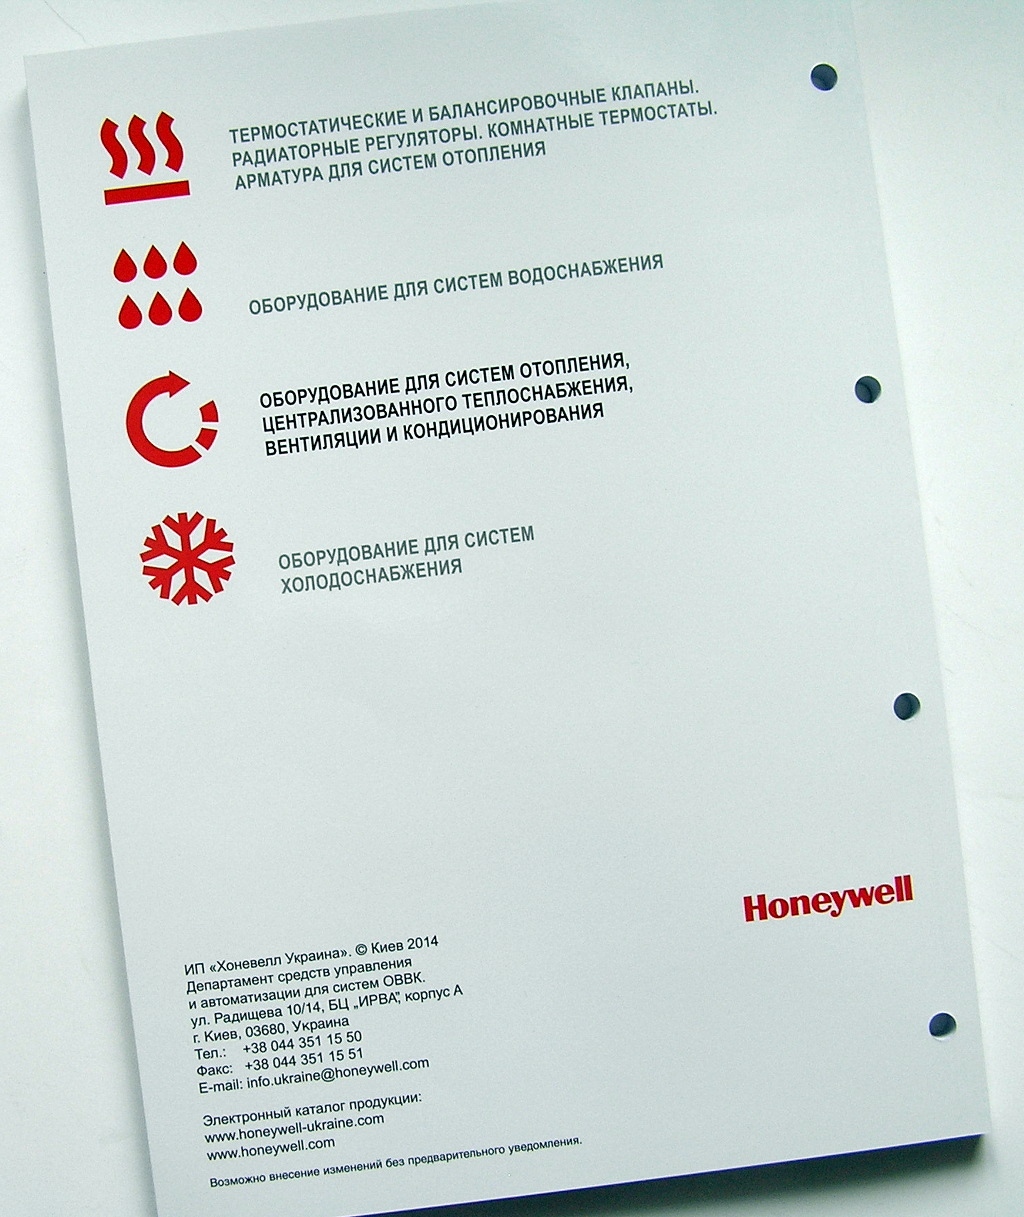 Друк каталогів «Honeywell. Оборудование для систем отопления». Поліграфія друкарні Макрос, виготовлення каталогів, специфікація 964969-7